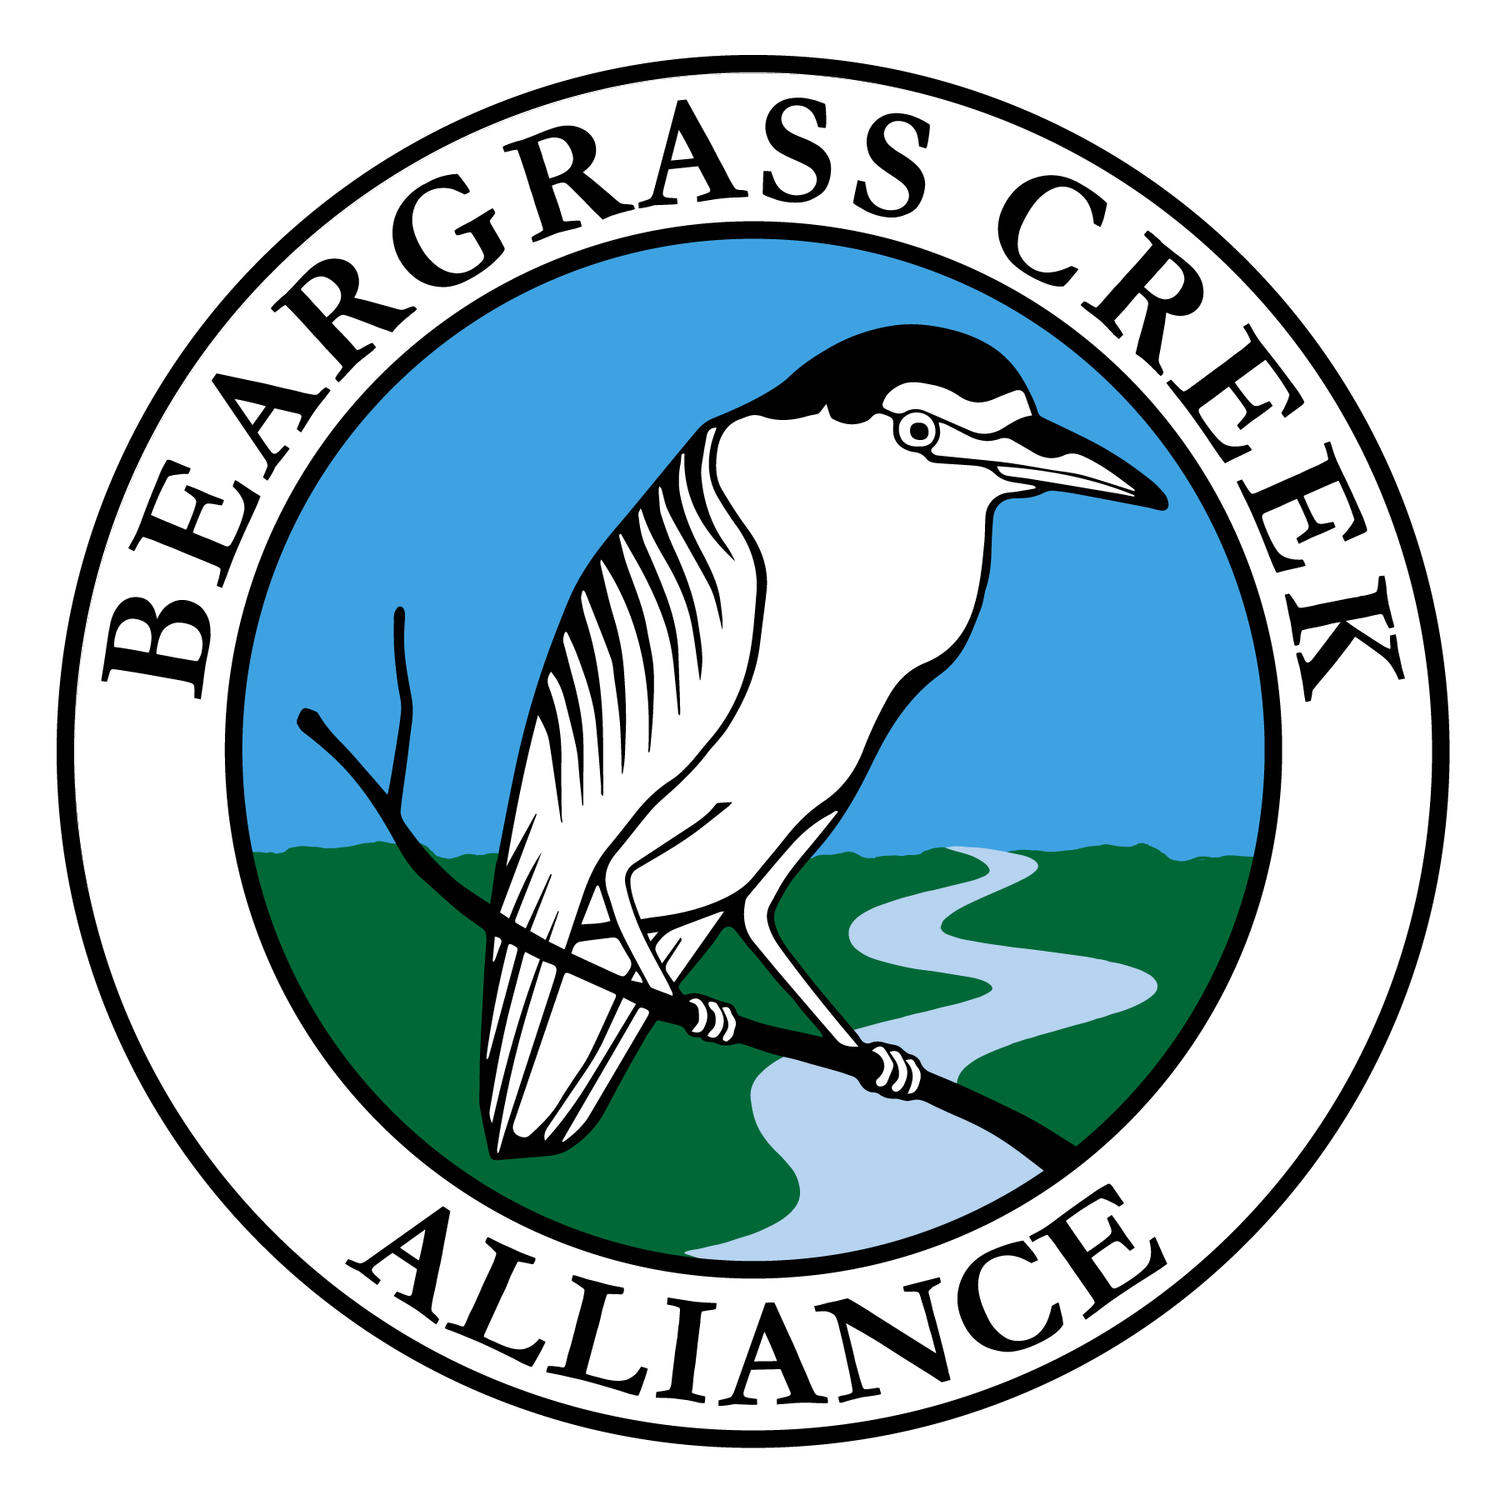 Beargrass Creek Alliance